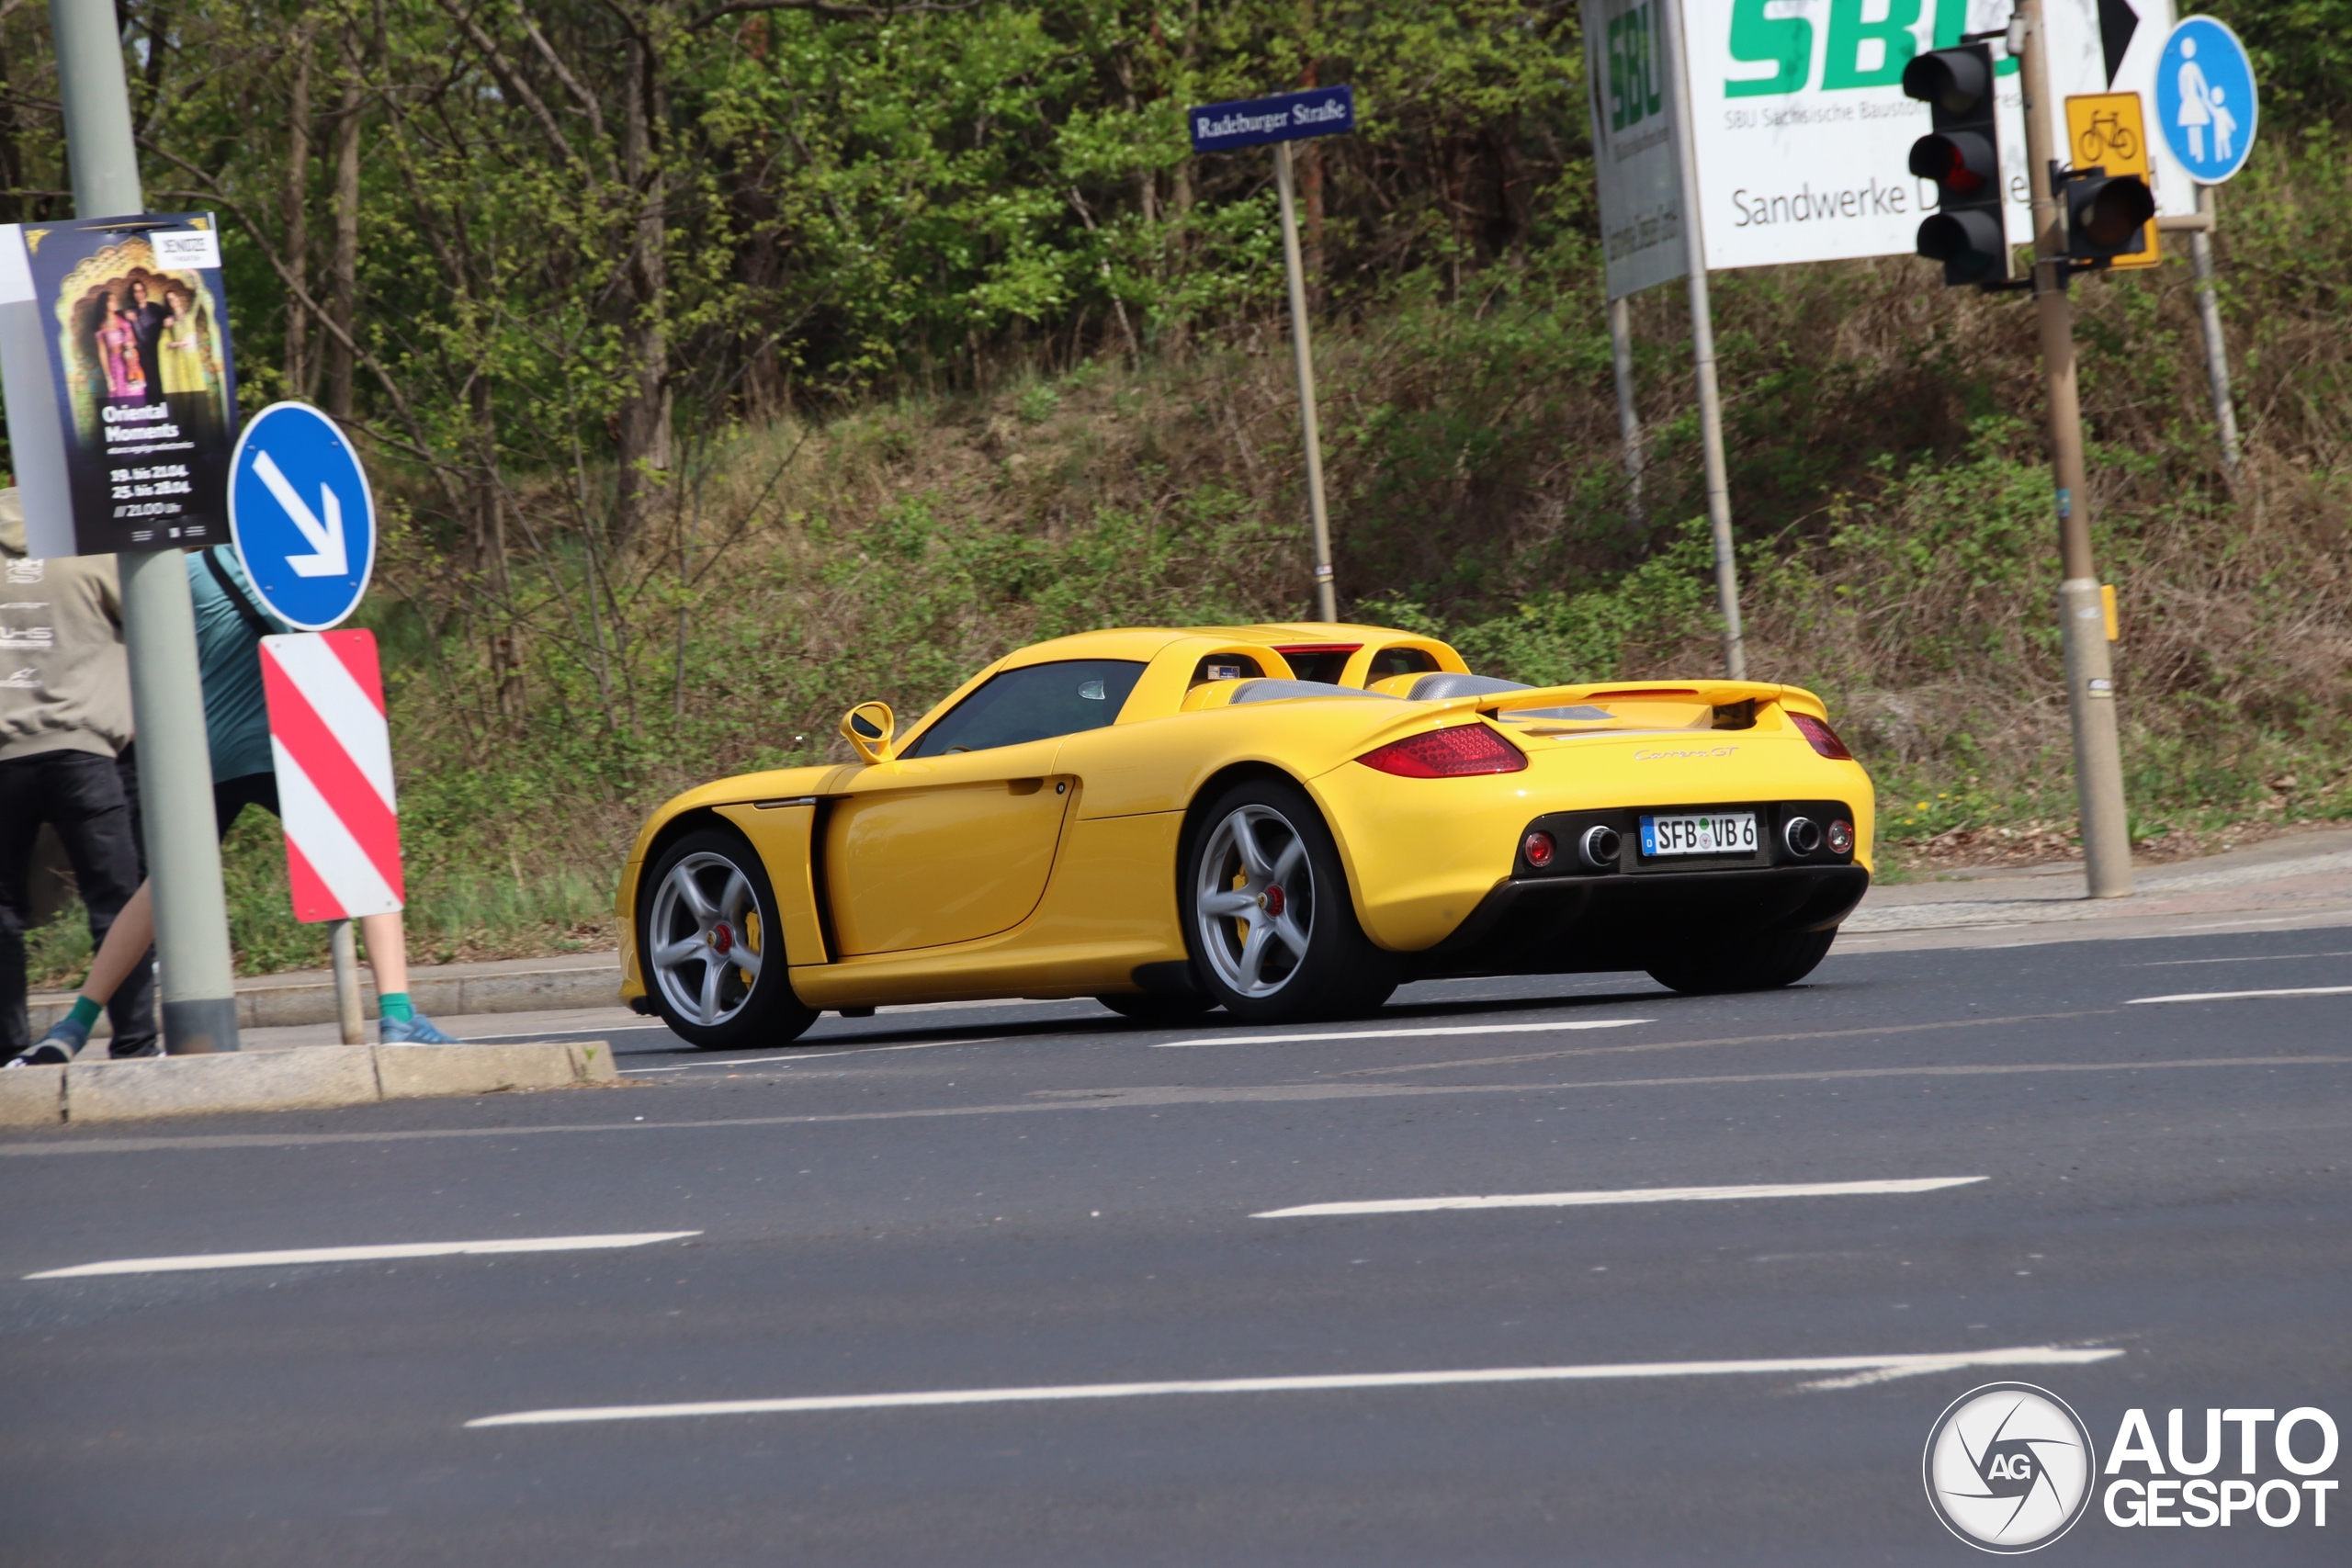 Žuta Carrera GT pojavljuje se u Drezdenu.